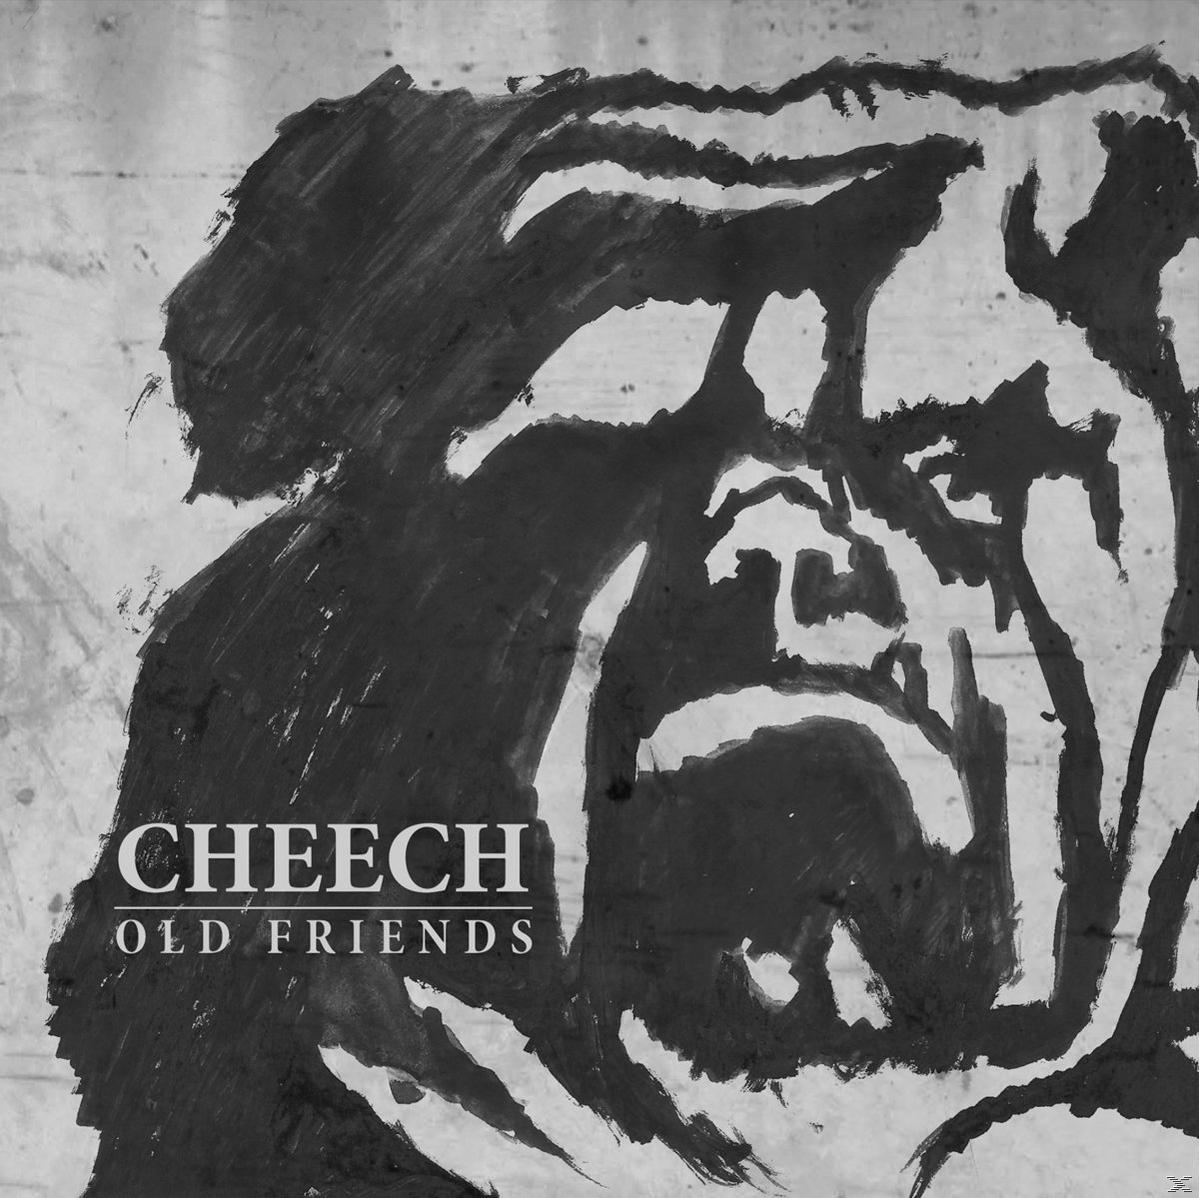 Old - Friends (Digipak) (CD) Cheech -